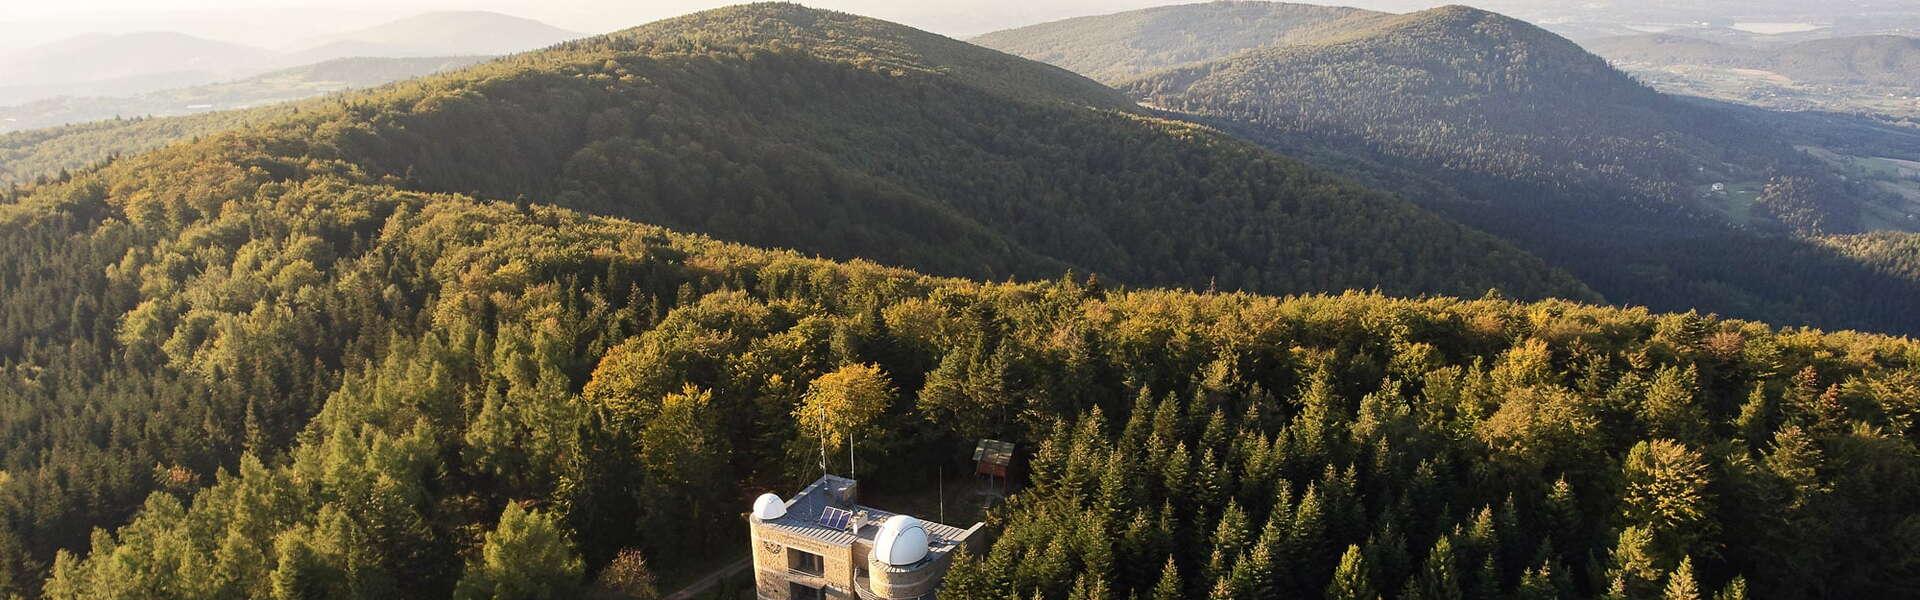 Obserwatorium astronomiczne na górze Lubomir. Wokół roztaczają się zielone połacie drzew